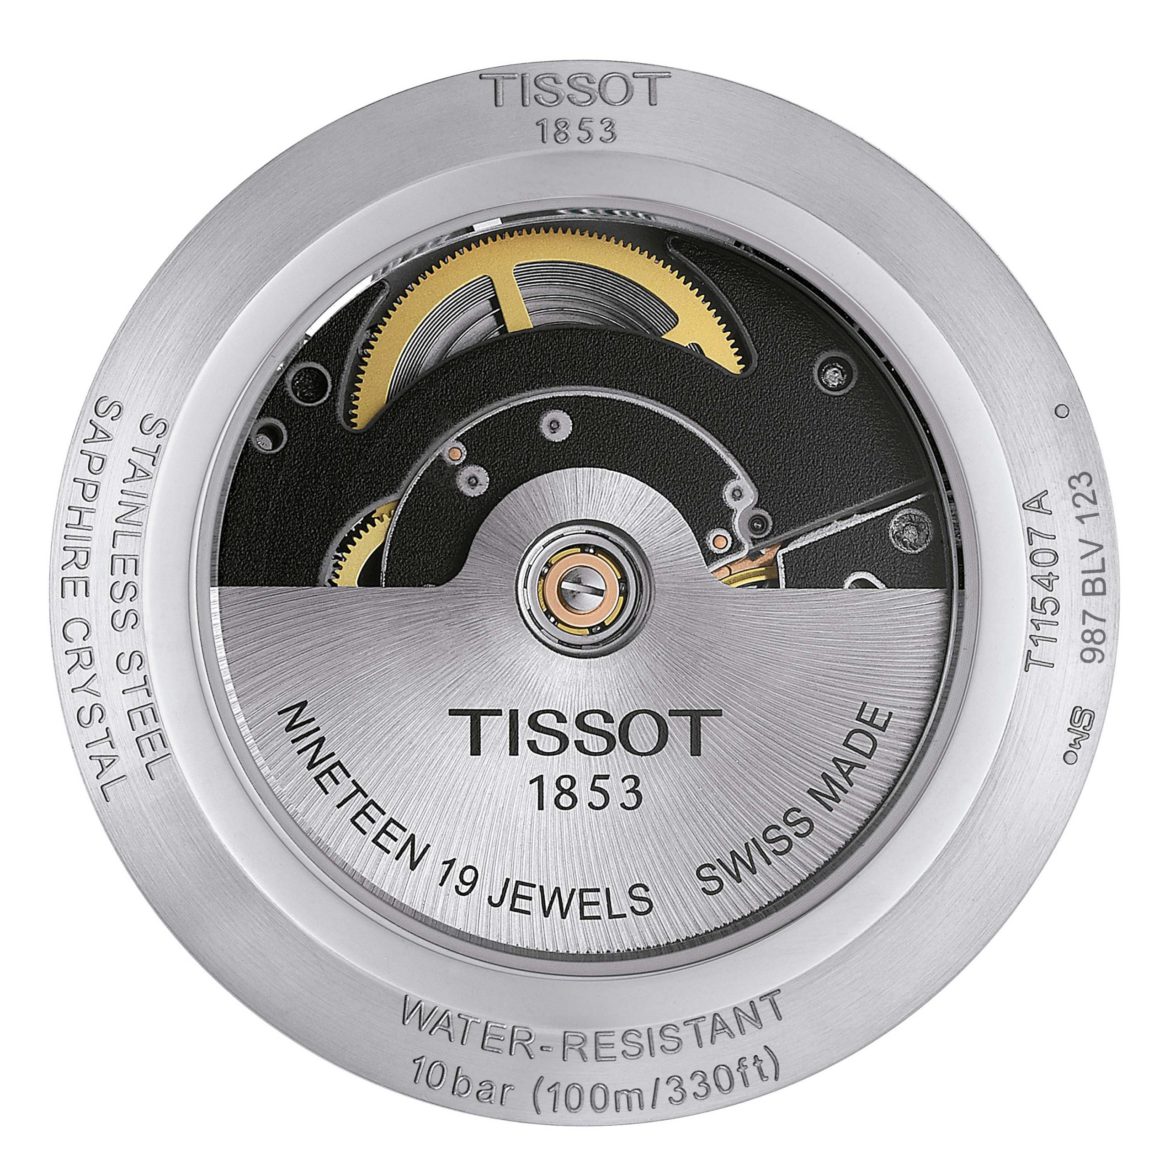 TISSOT</br>Tissot T-Race Swissmatic</br>T1154071705100